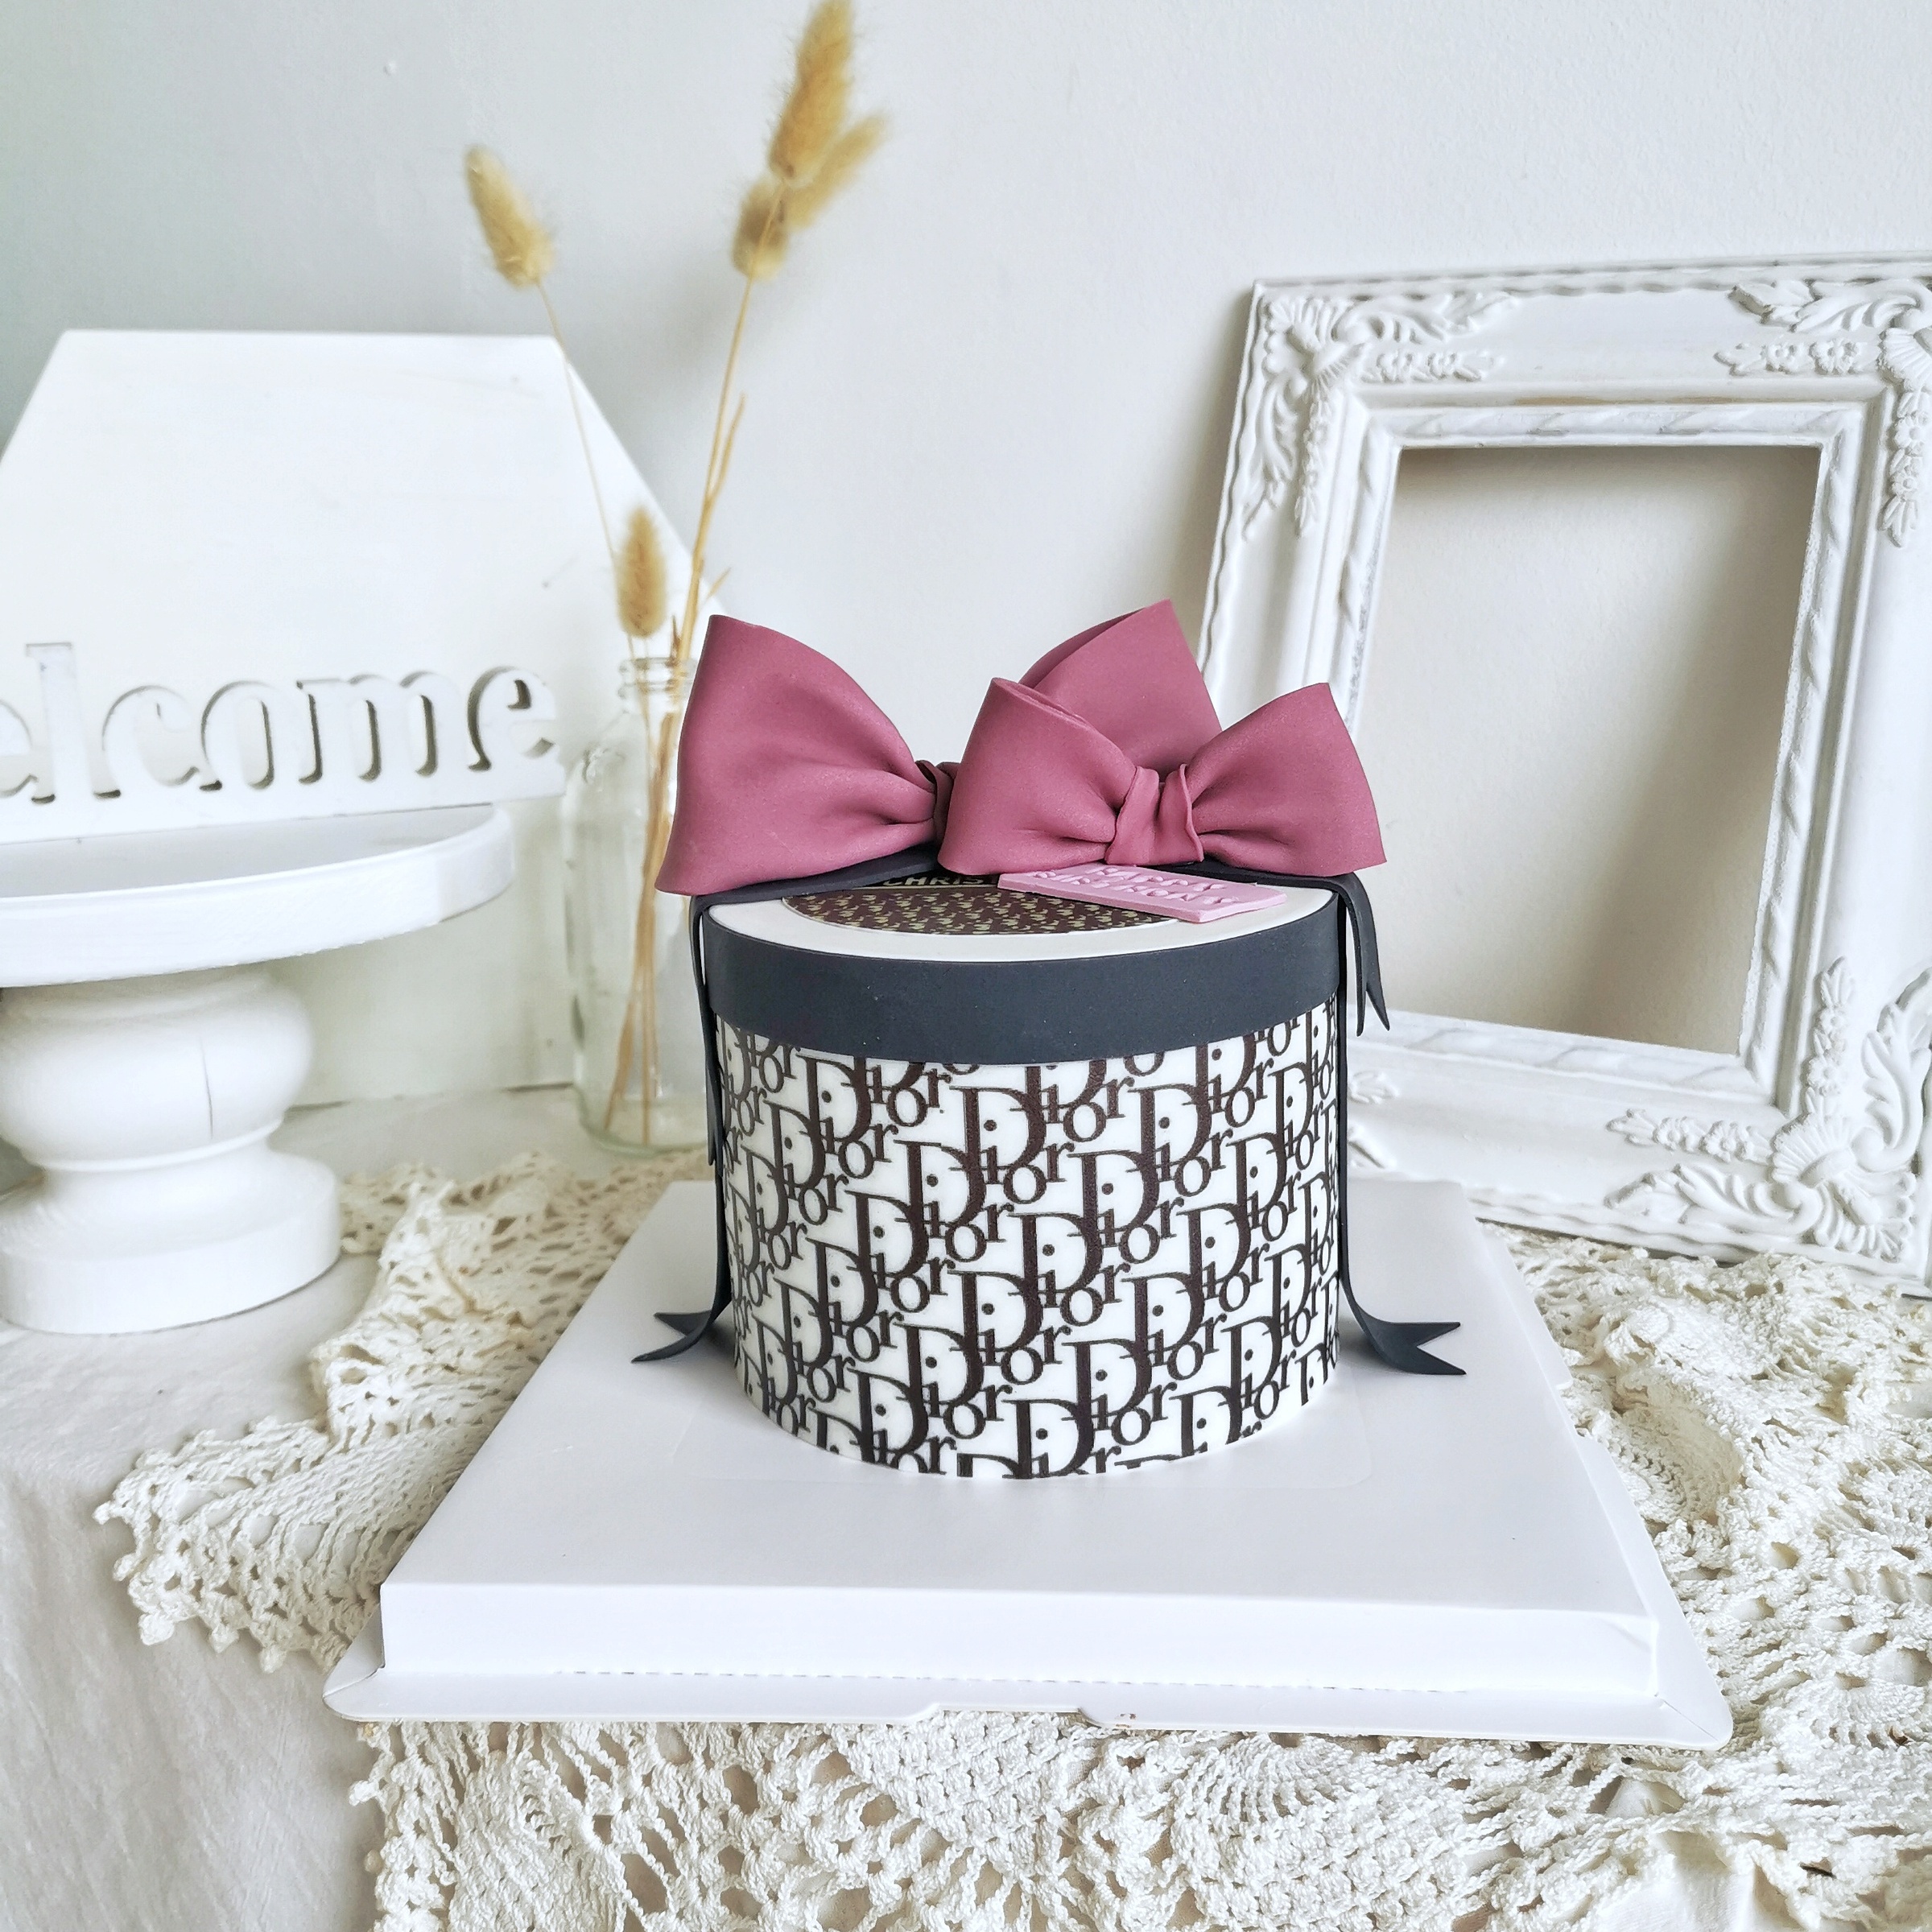 Dollhouse Miniature Dior Cake 1:6 Scale Dessert Kitchen | eBay